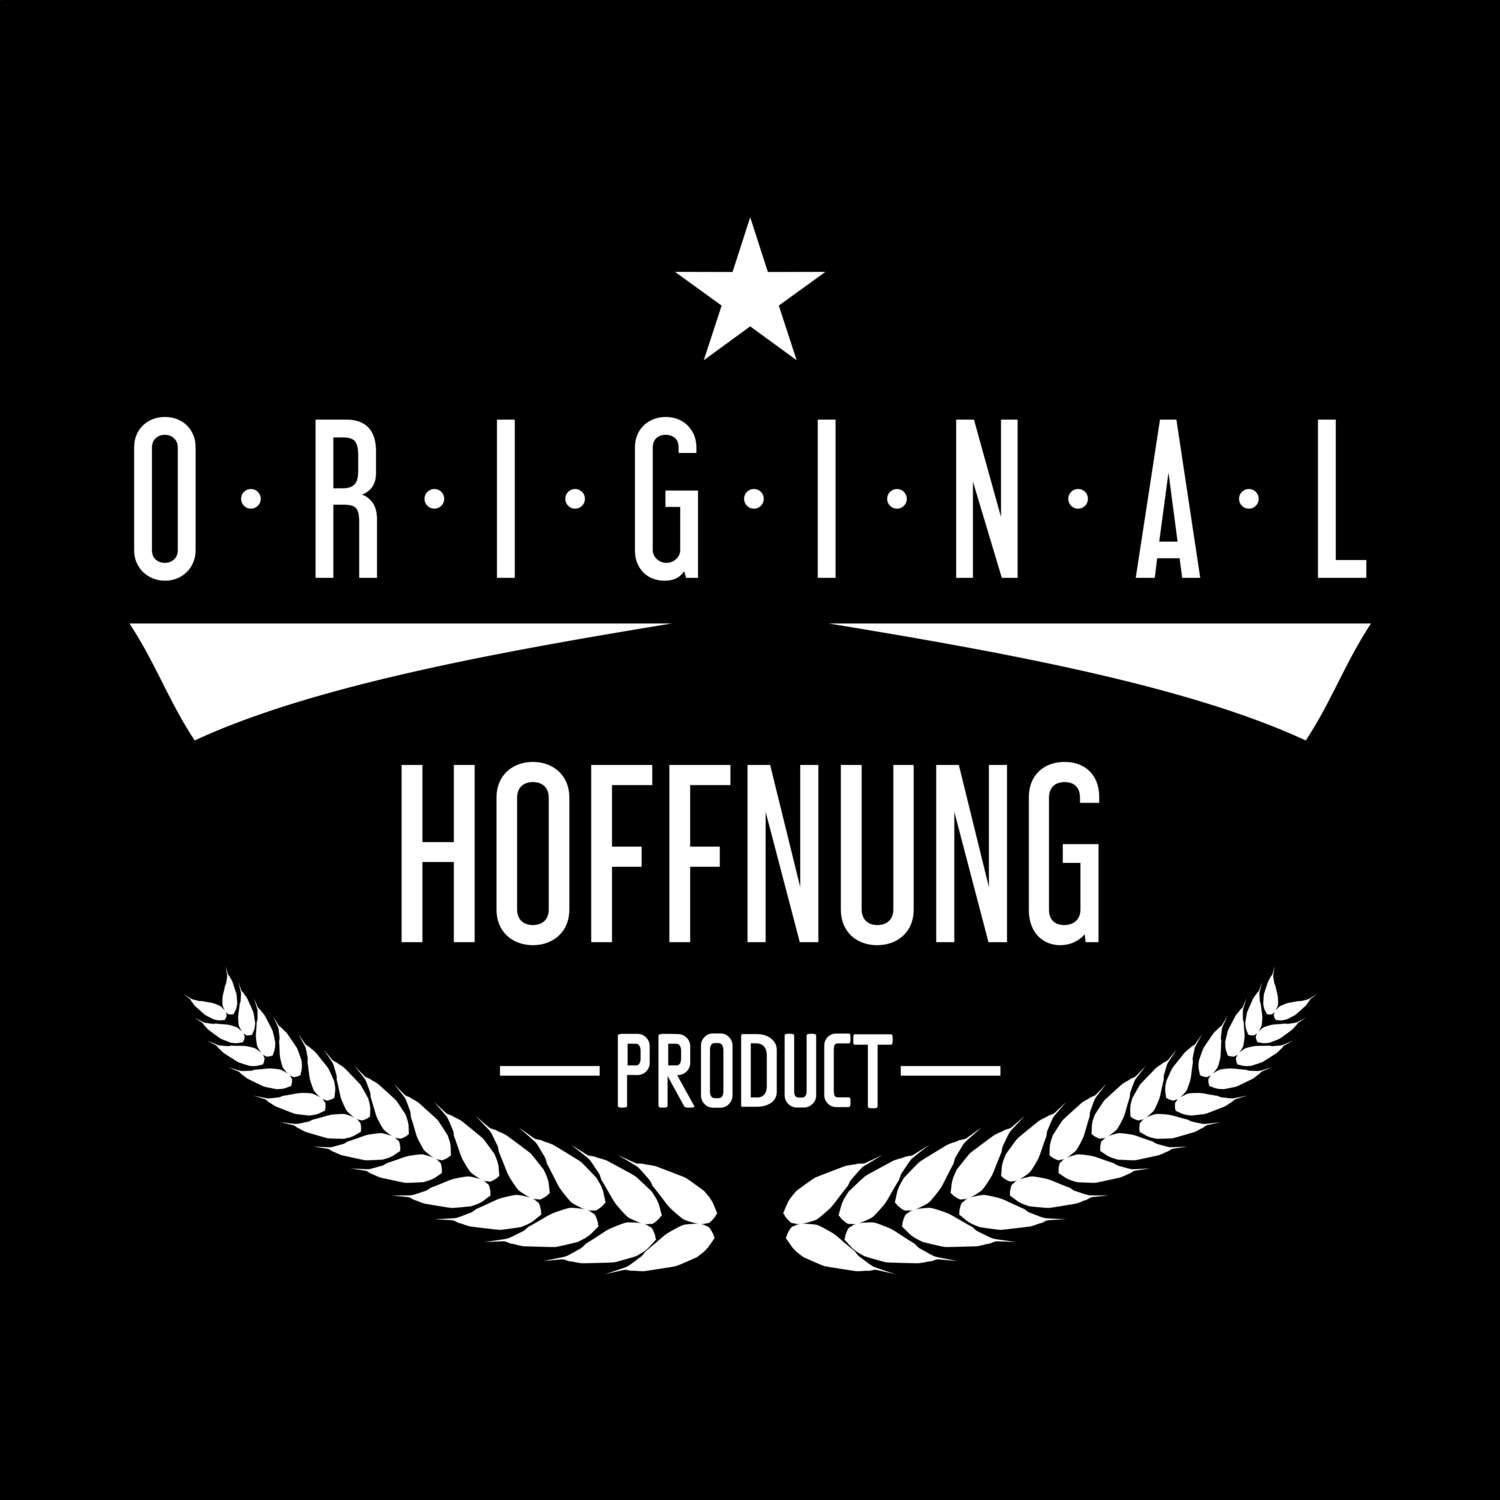 Hoffnung T-Shirt »Original Product«